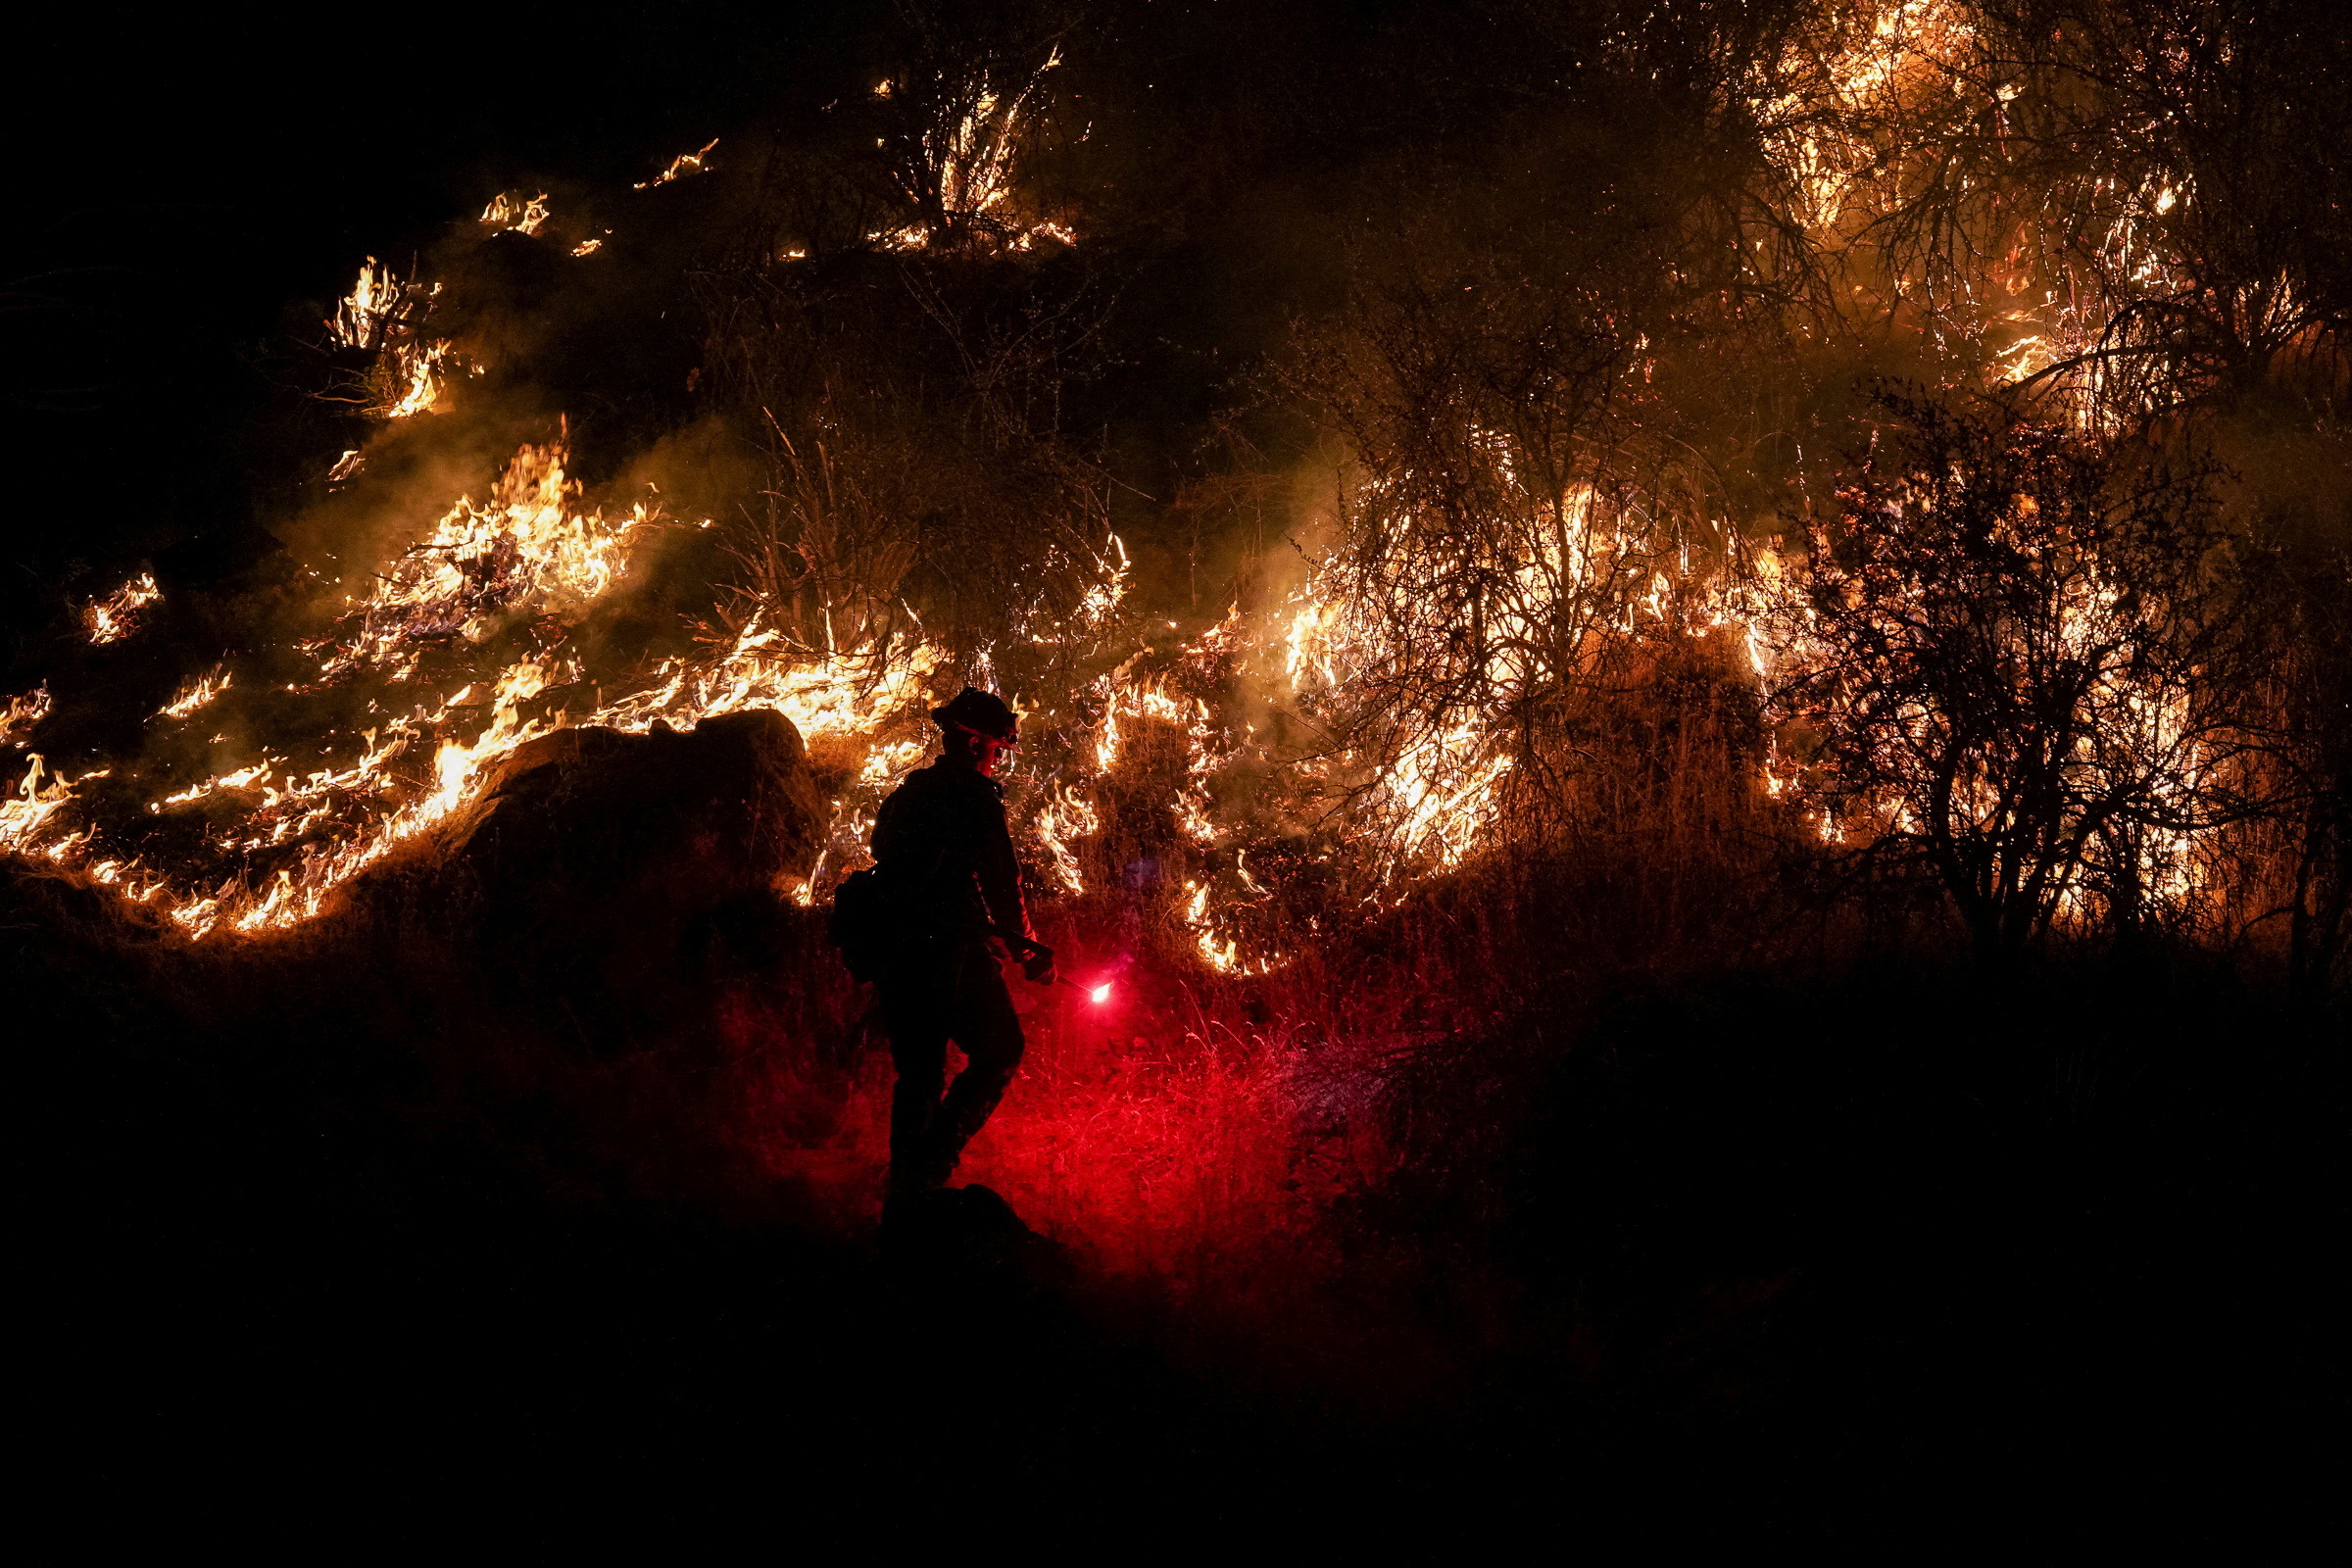 Un bombero enciende un quemador cerca de Midpines Park a lo largo de la carretera 140 mientras el Oak Fire arde cerca de Mariposa, California, el 22 de julio de 2022 (REUTERS/Tracy Barbutes)